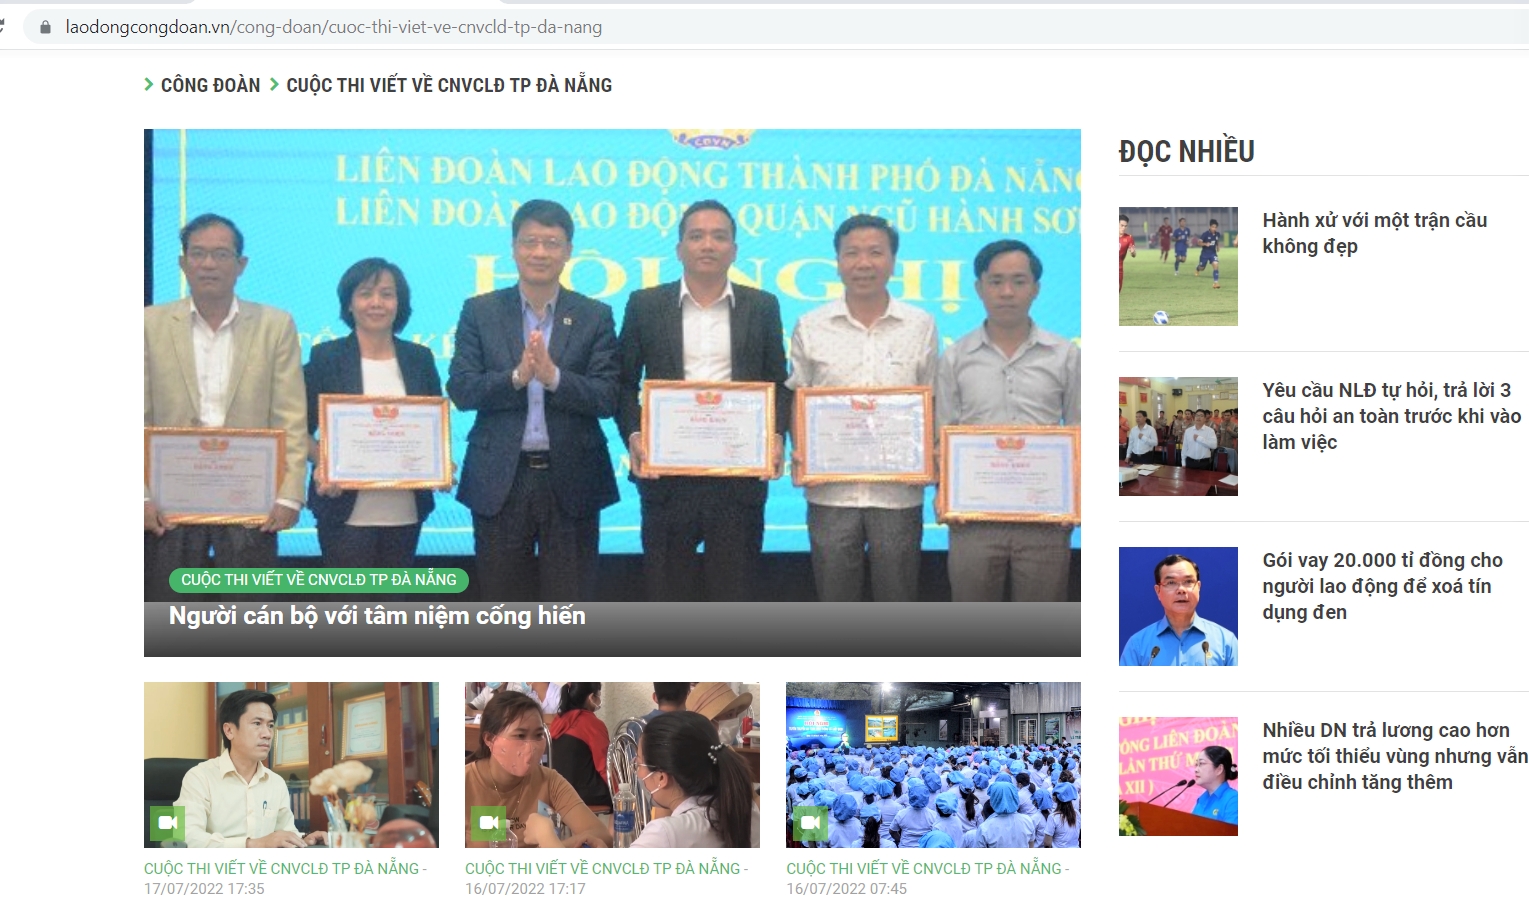 Cuộc thi viết về phong trào CNVCLĐ TP Đà Nẵng: Ngày 20/7 kết thúc nhận bài dự thi